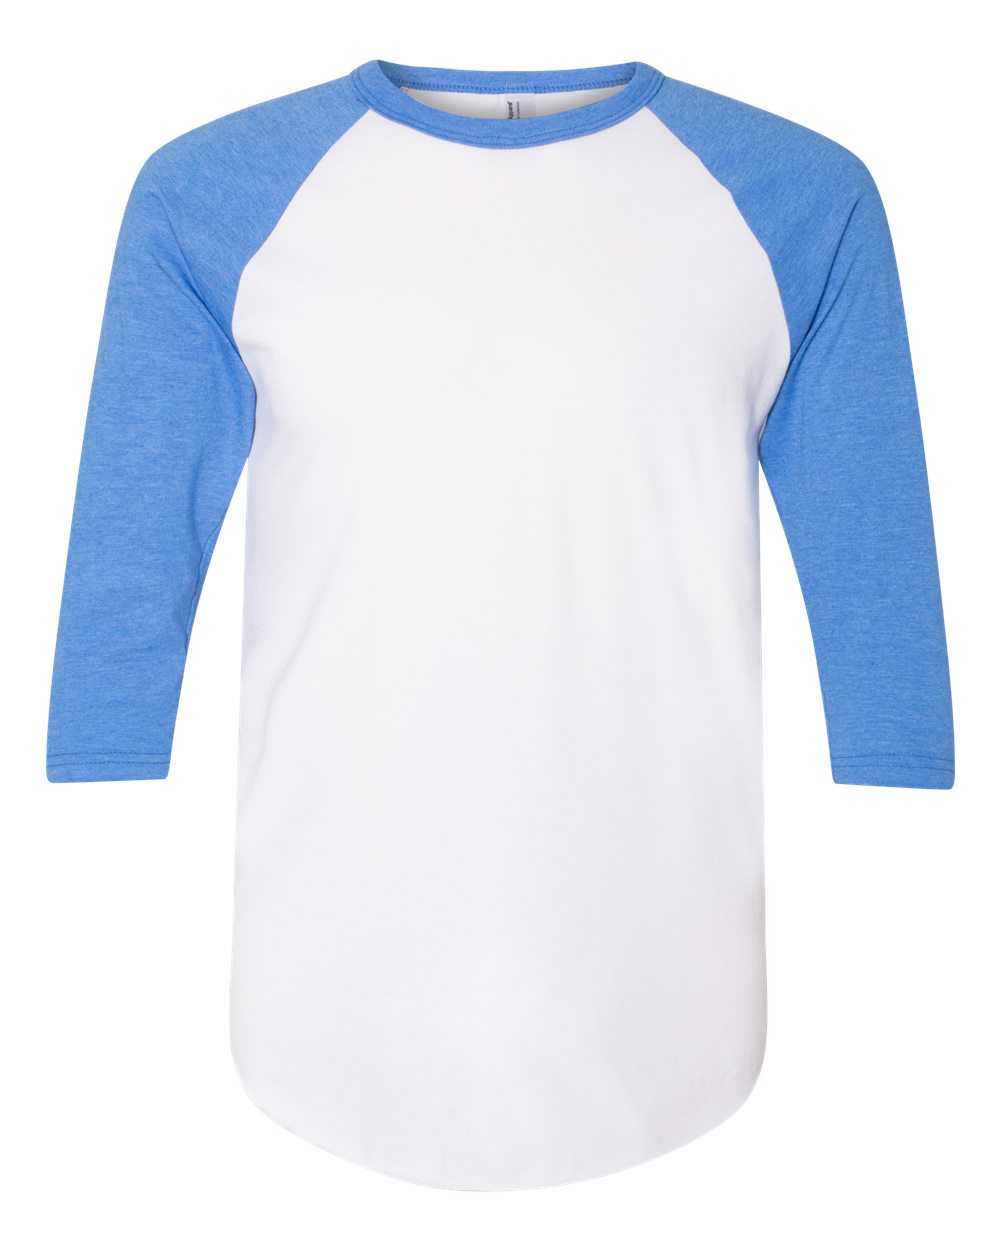 American Apparel BB453W Poly-Cotton 3/4-Sleeve Raglan T-Shirt - White/Heather Lake Blue - HIT a Double